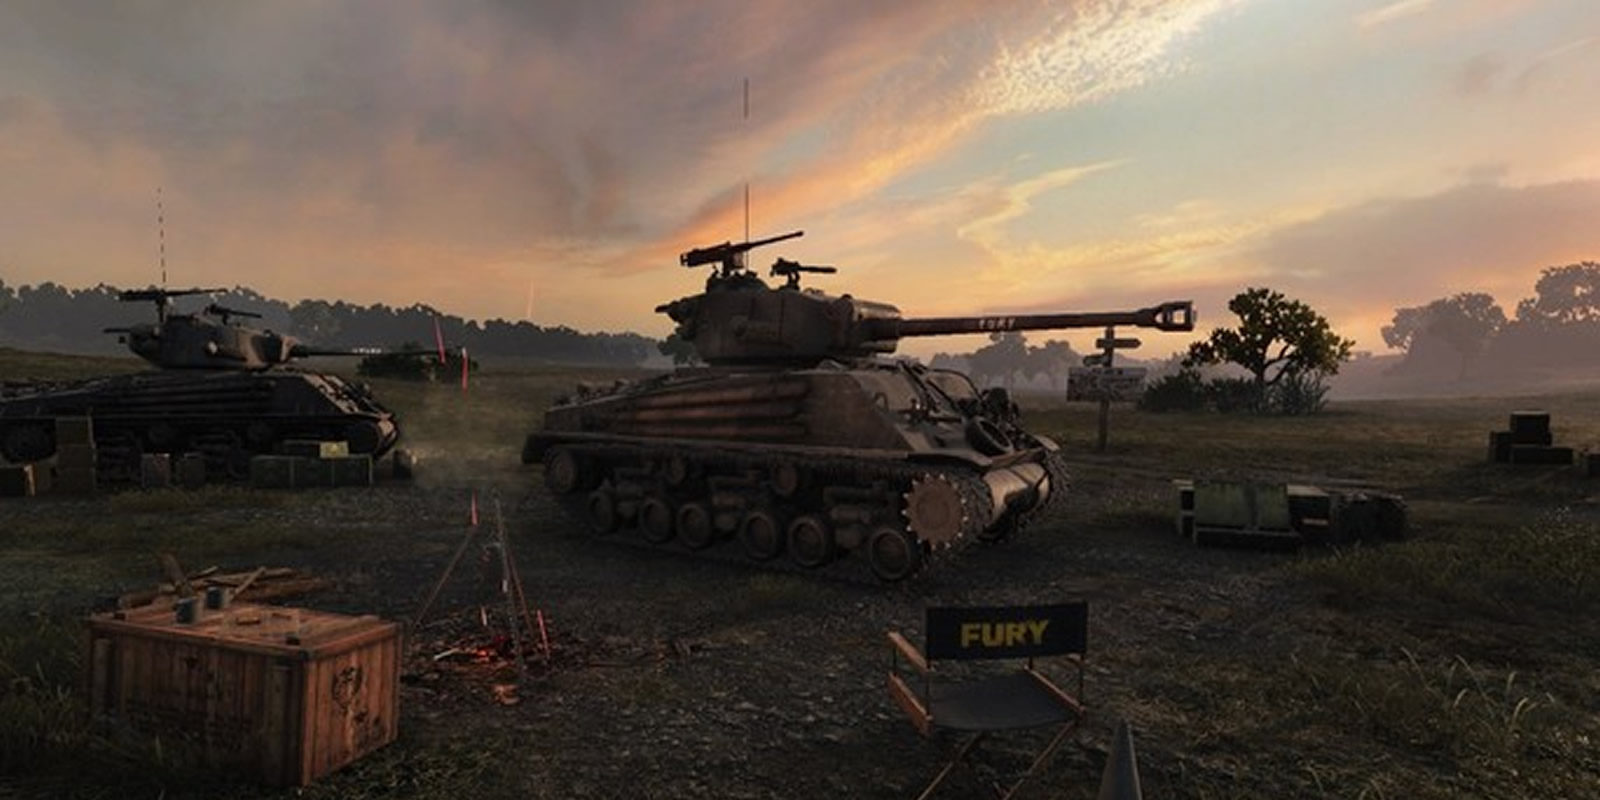 El Fury vuelve a estar disponible en 'World of Tanks'